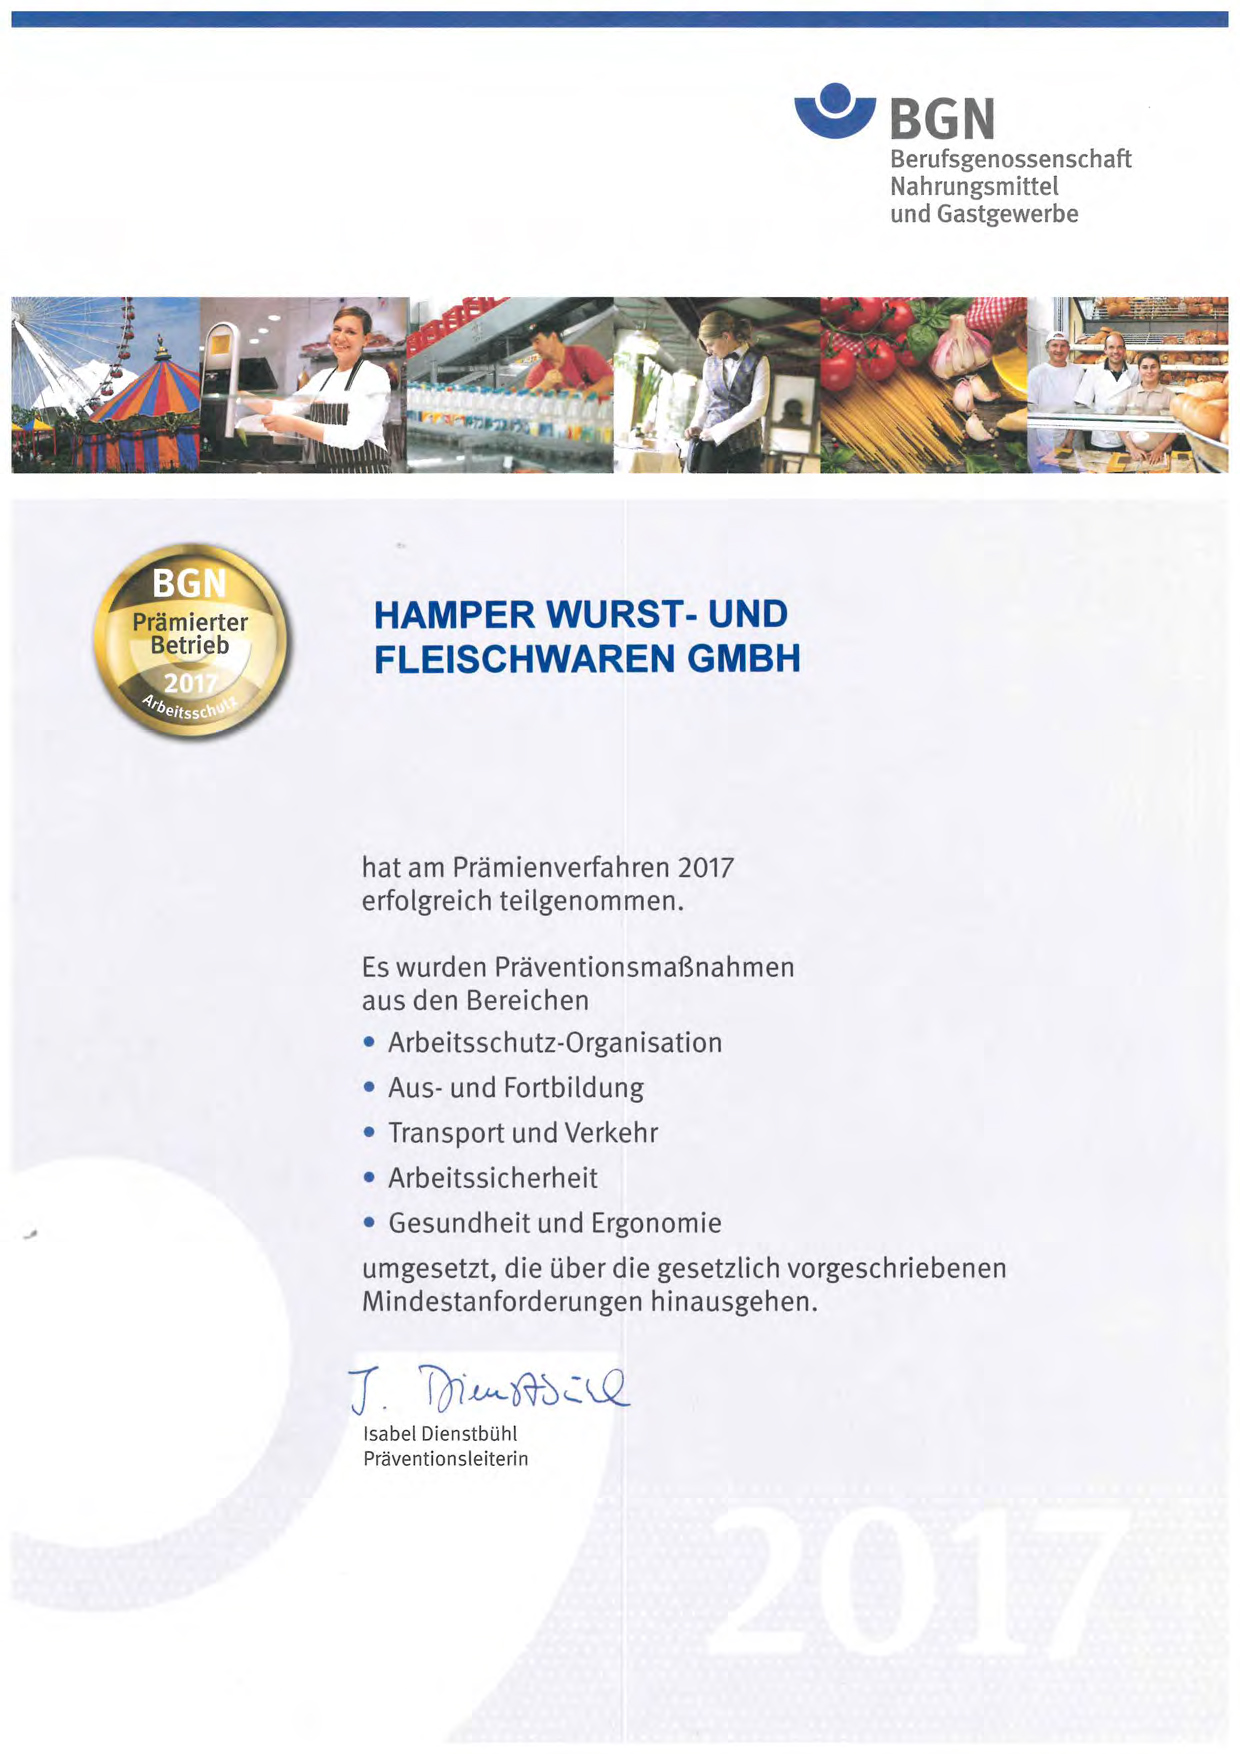 Unser Betrieb in Mettendorf wurde als prämierter Betrieb zum Arbeitsschutz von der Berufsgenossenschaft BGN ausgezeichnet. | 753 Hamper Mettendorf - Qualitätsproduzent für Rind-, Lamm- und Geflügelfleischwaren